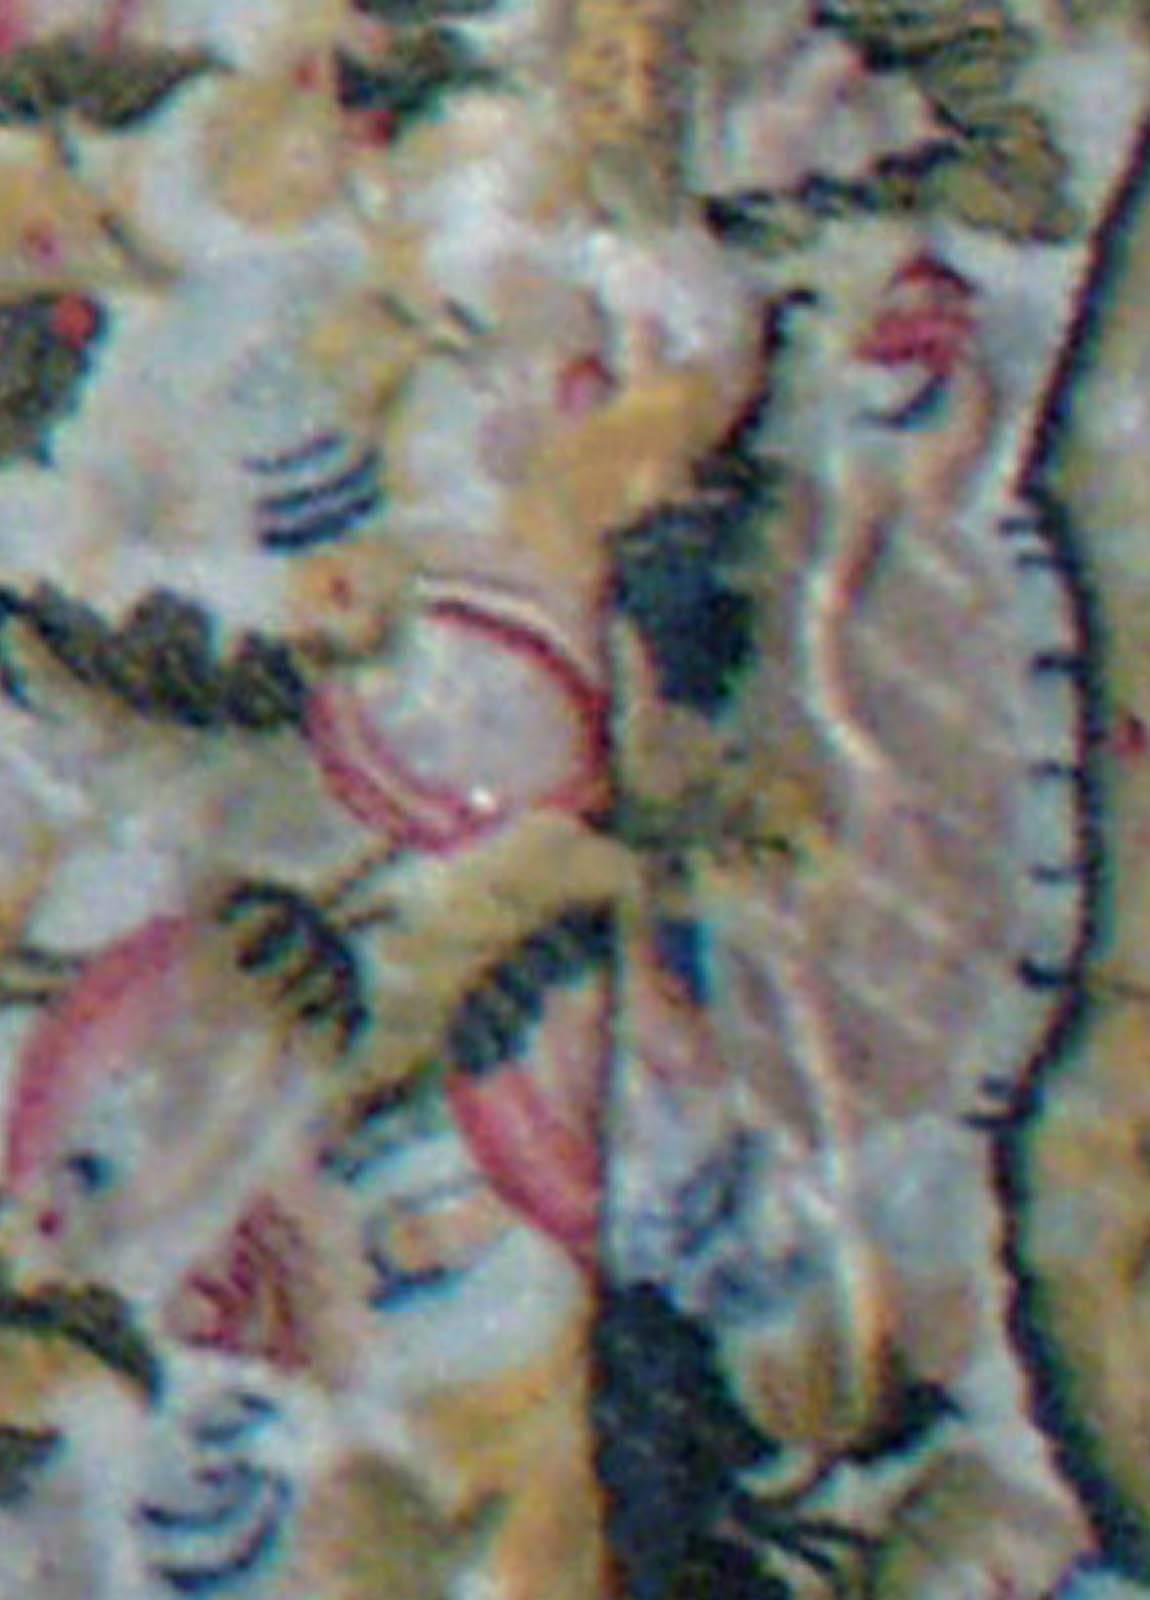 Antique French botanic needlework rug by Doris Leslie Blau
Size: 4'0